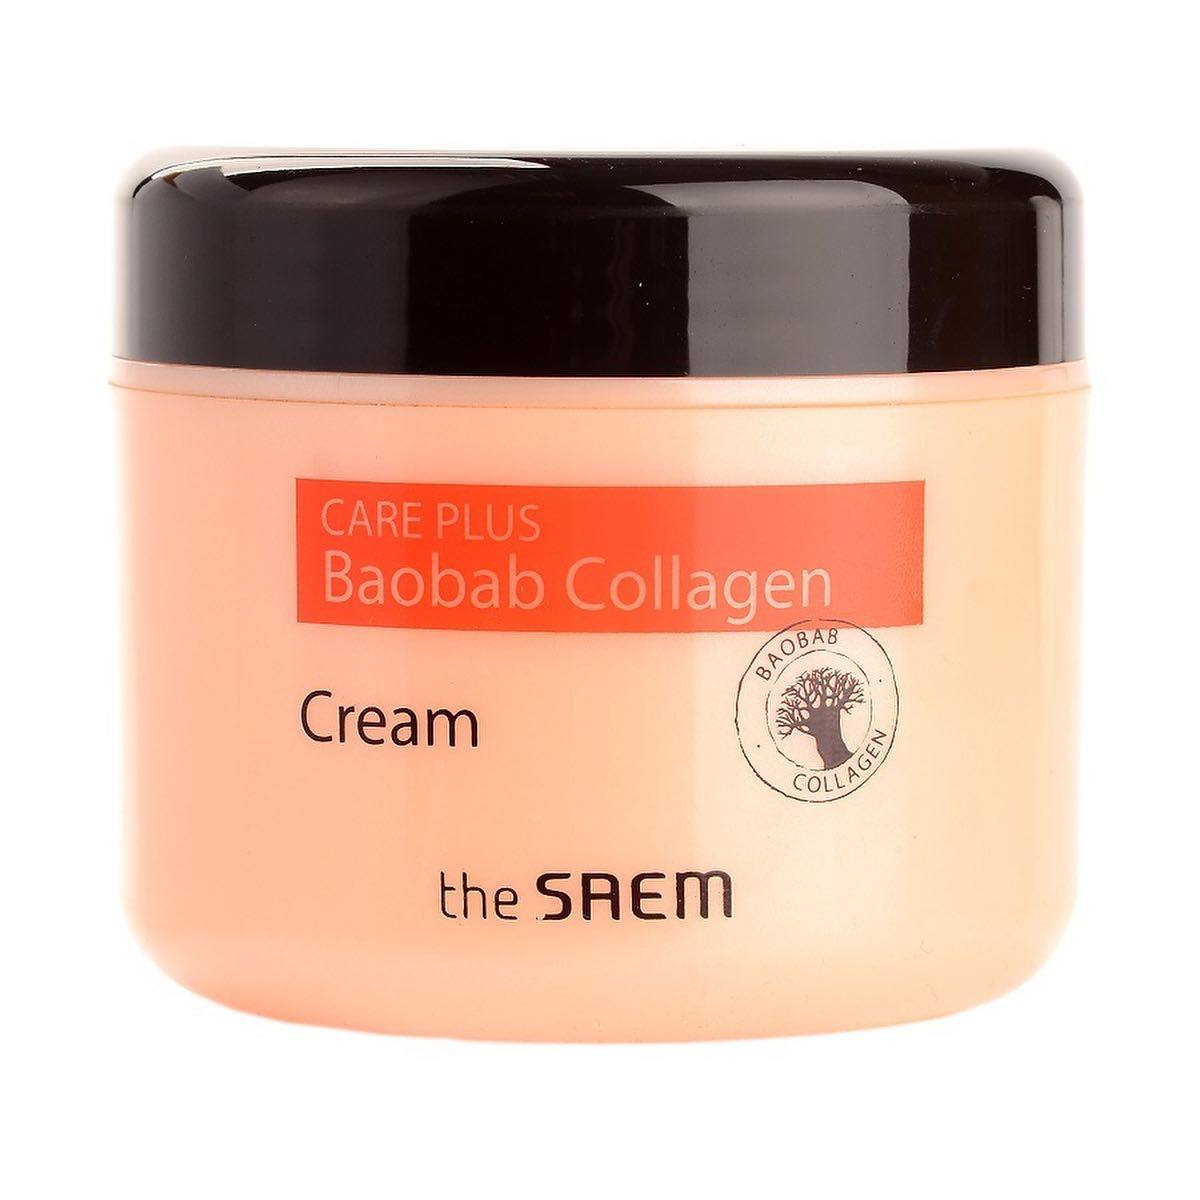 Увлажняющий коллагеновый крем для лица с экстрактом баобаба The Saem Care Plus Baobab Collagen Cream,100 ml